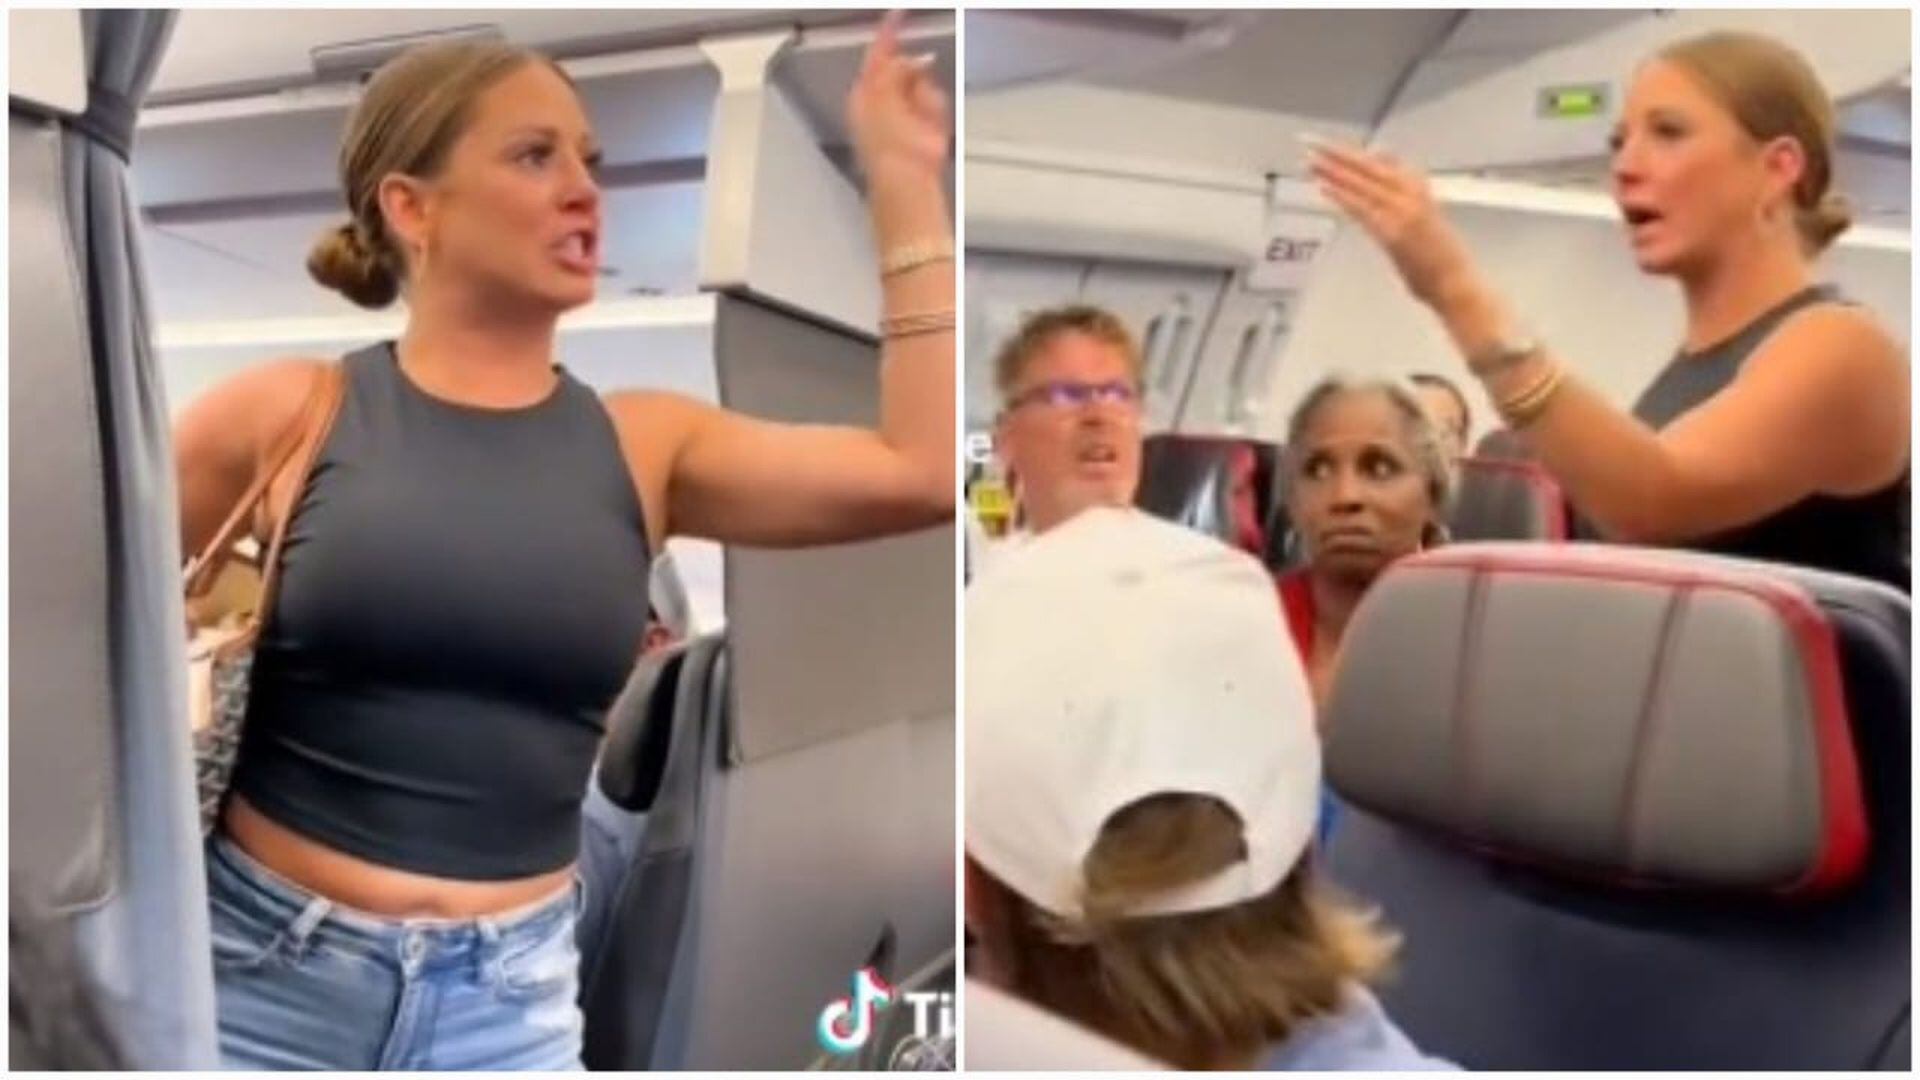 La chica viral del avión dice que abandonó el vuelo por su propia voluntad